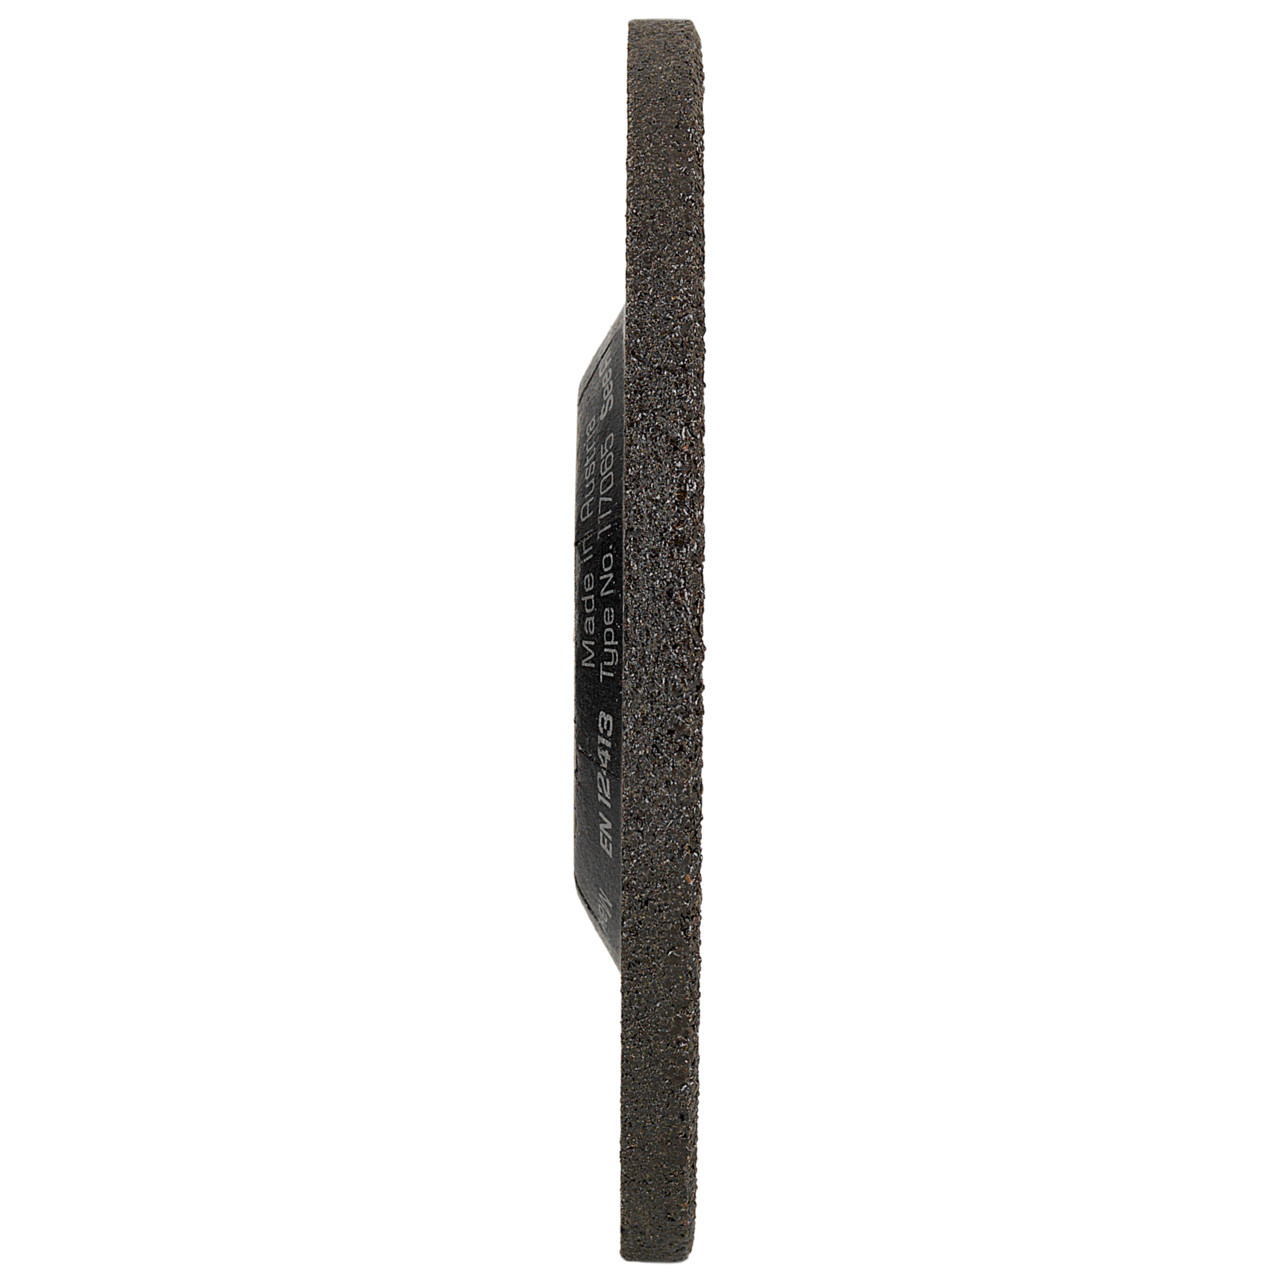 TYROLIT slijpschijf DxUxH 125x4x22.23 Voor roestvrij staal, vorm: 27 - offset-uitvoering, Art. 117068